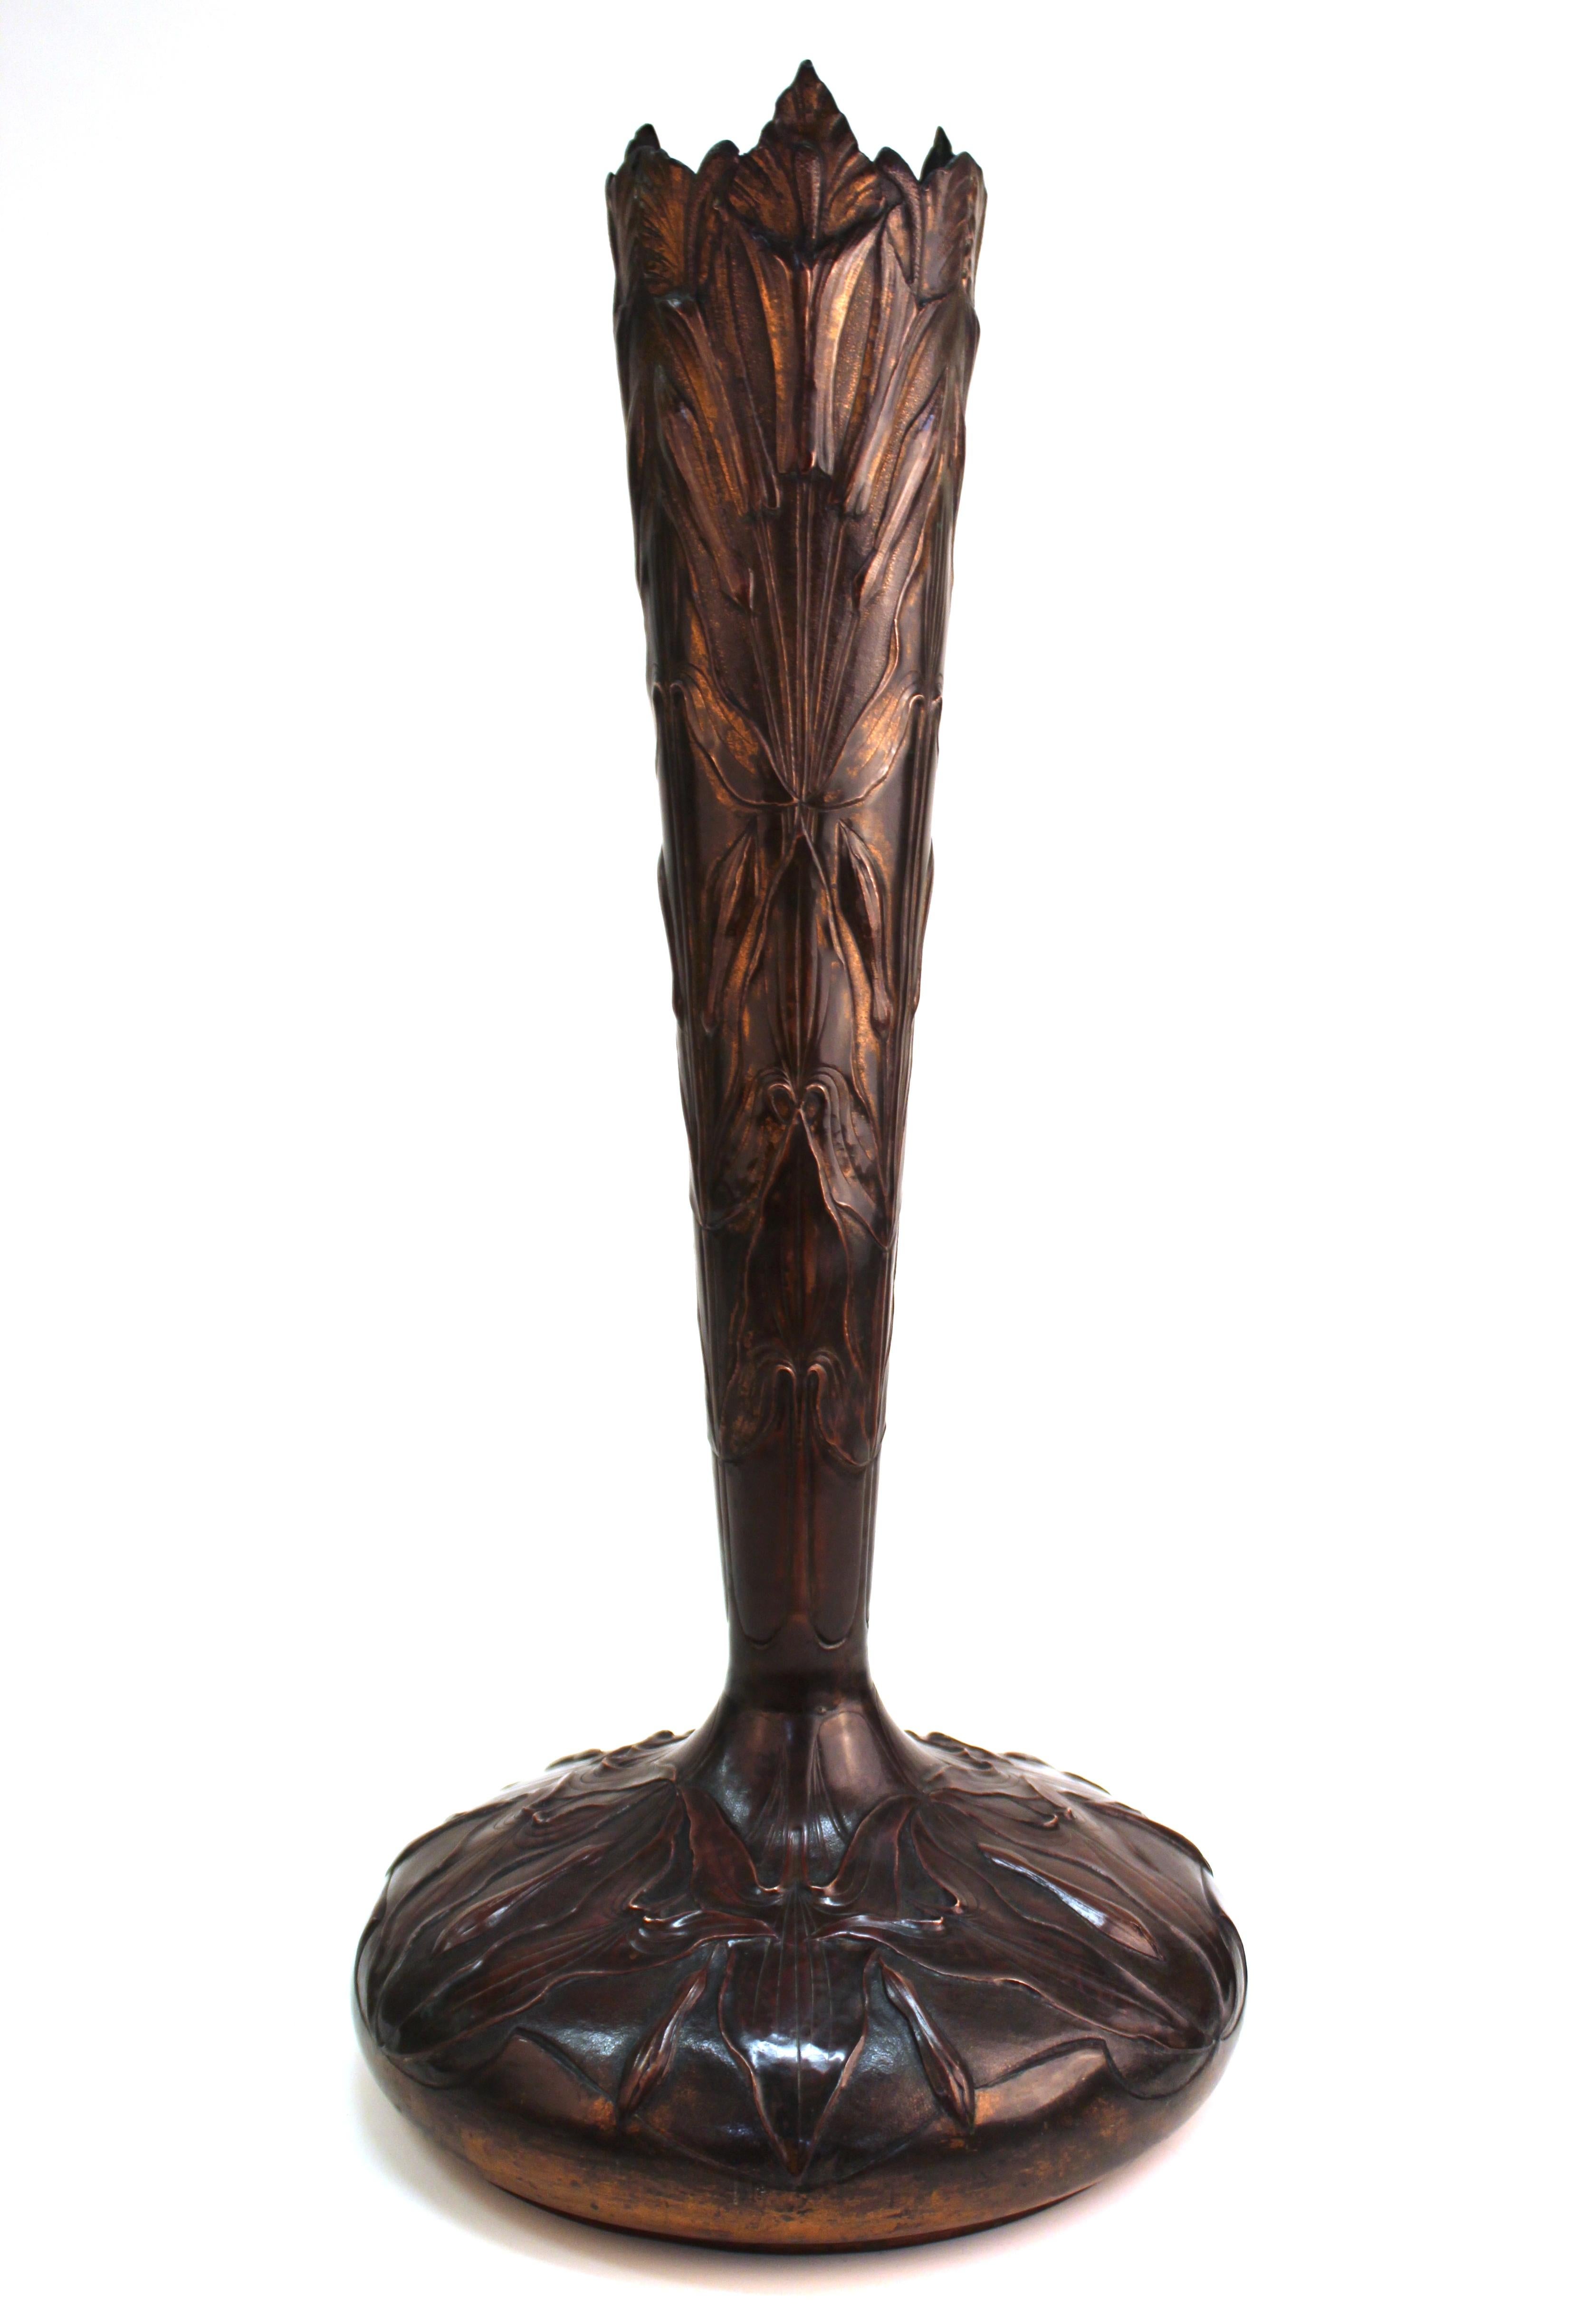 Repoussé French Art Nouveau Copper Repousse Vase with Leaves Motif